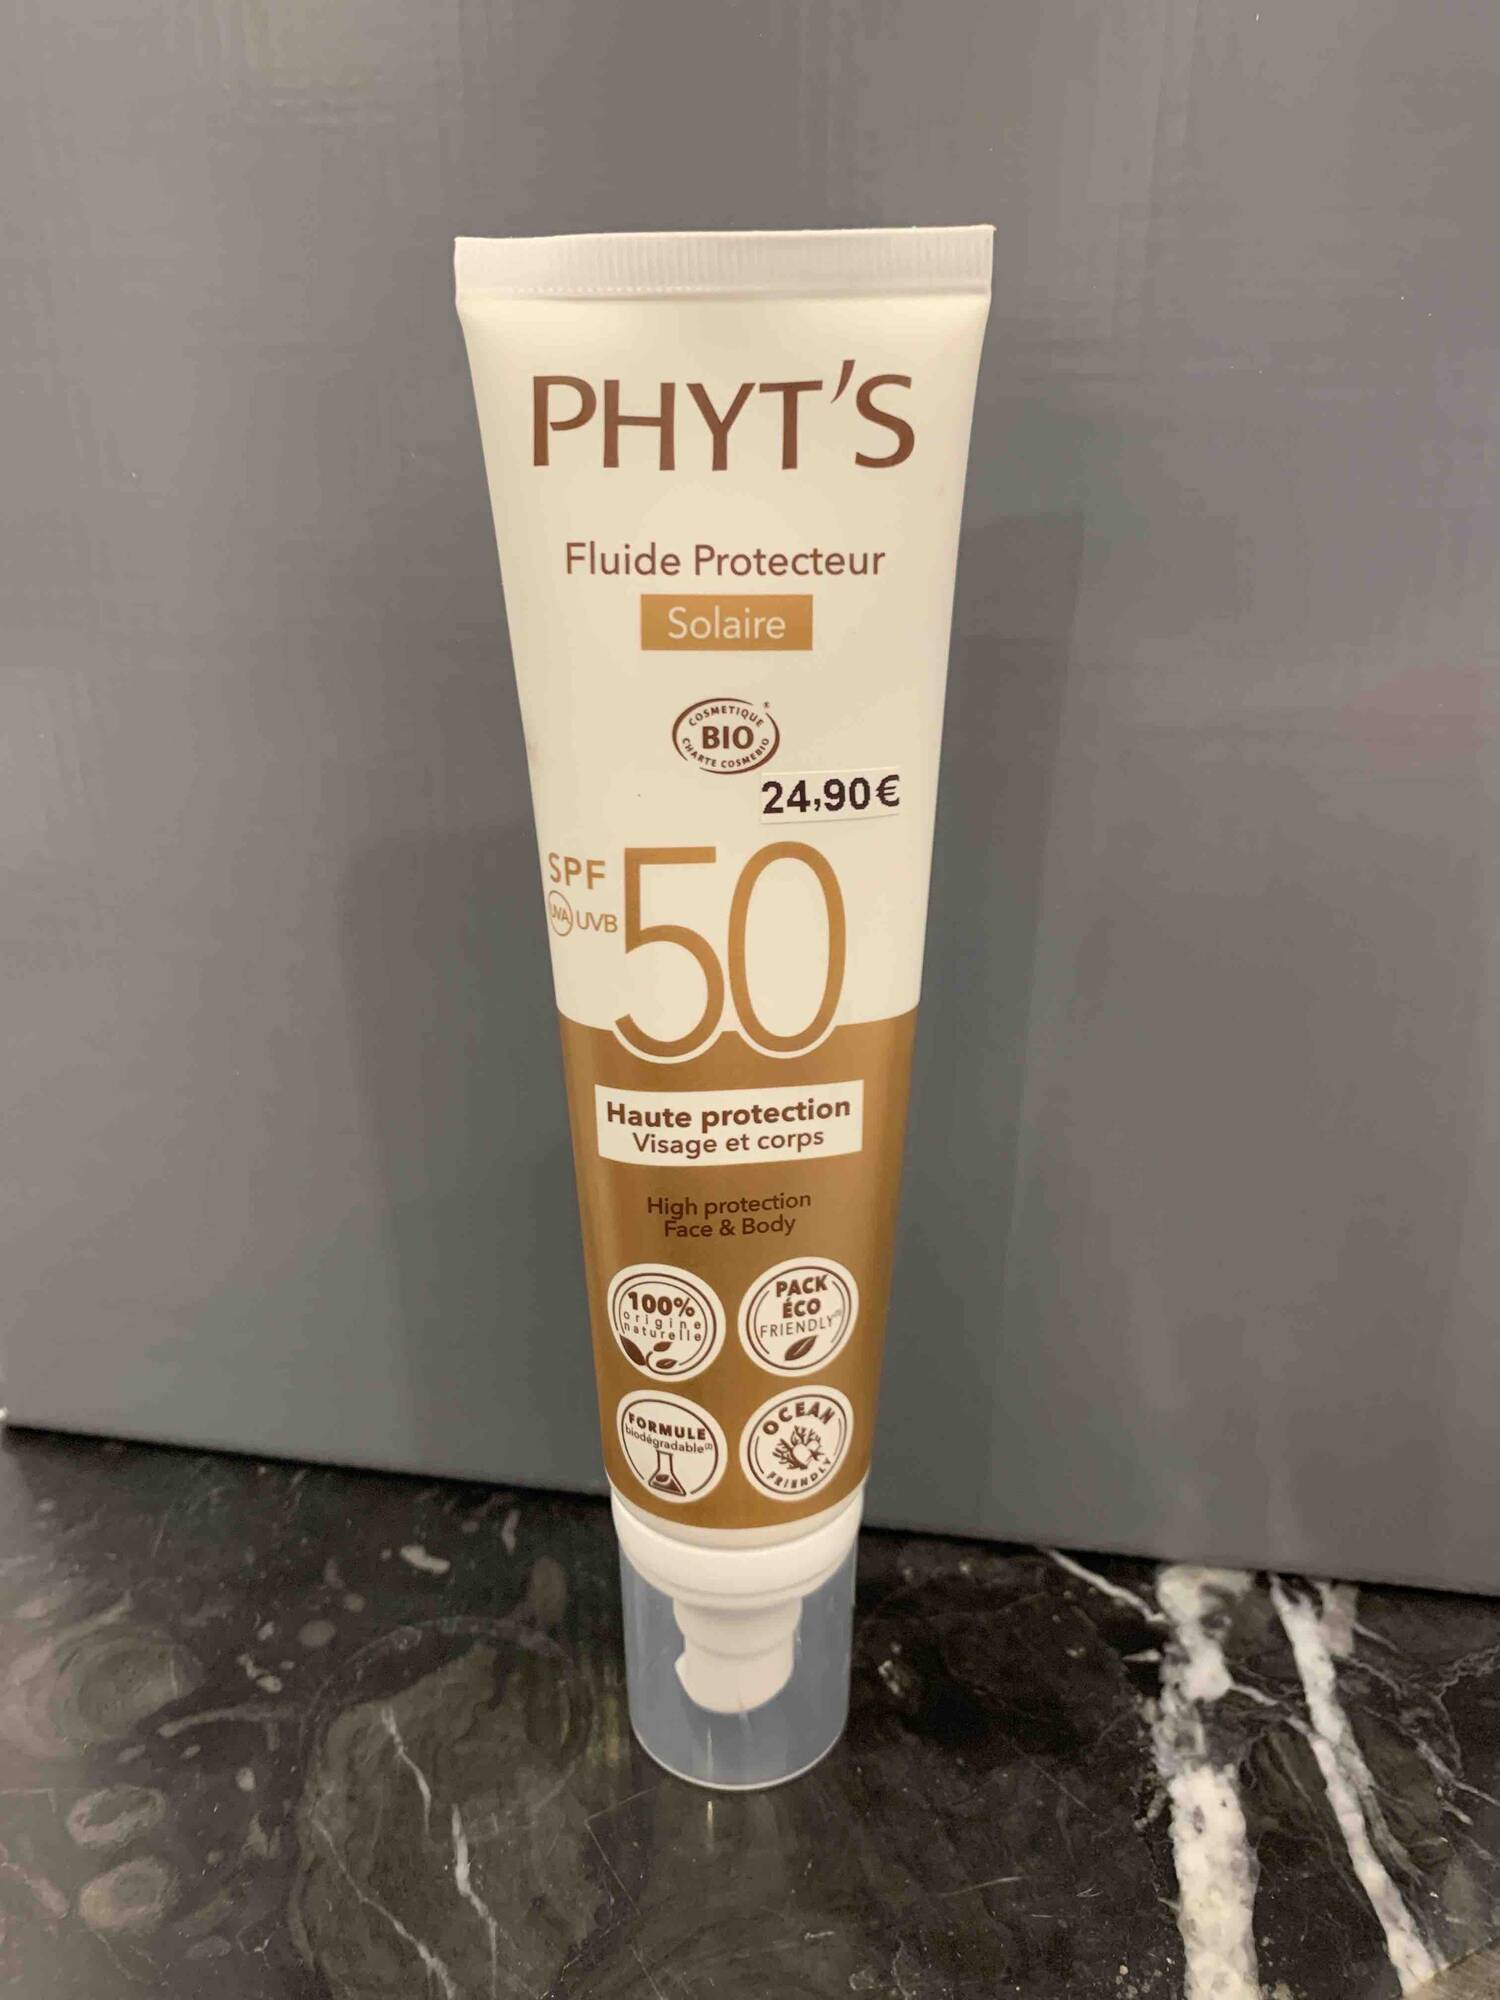 PHYT'S - Fluide Protecteur Solaire SPF 50